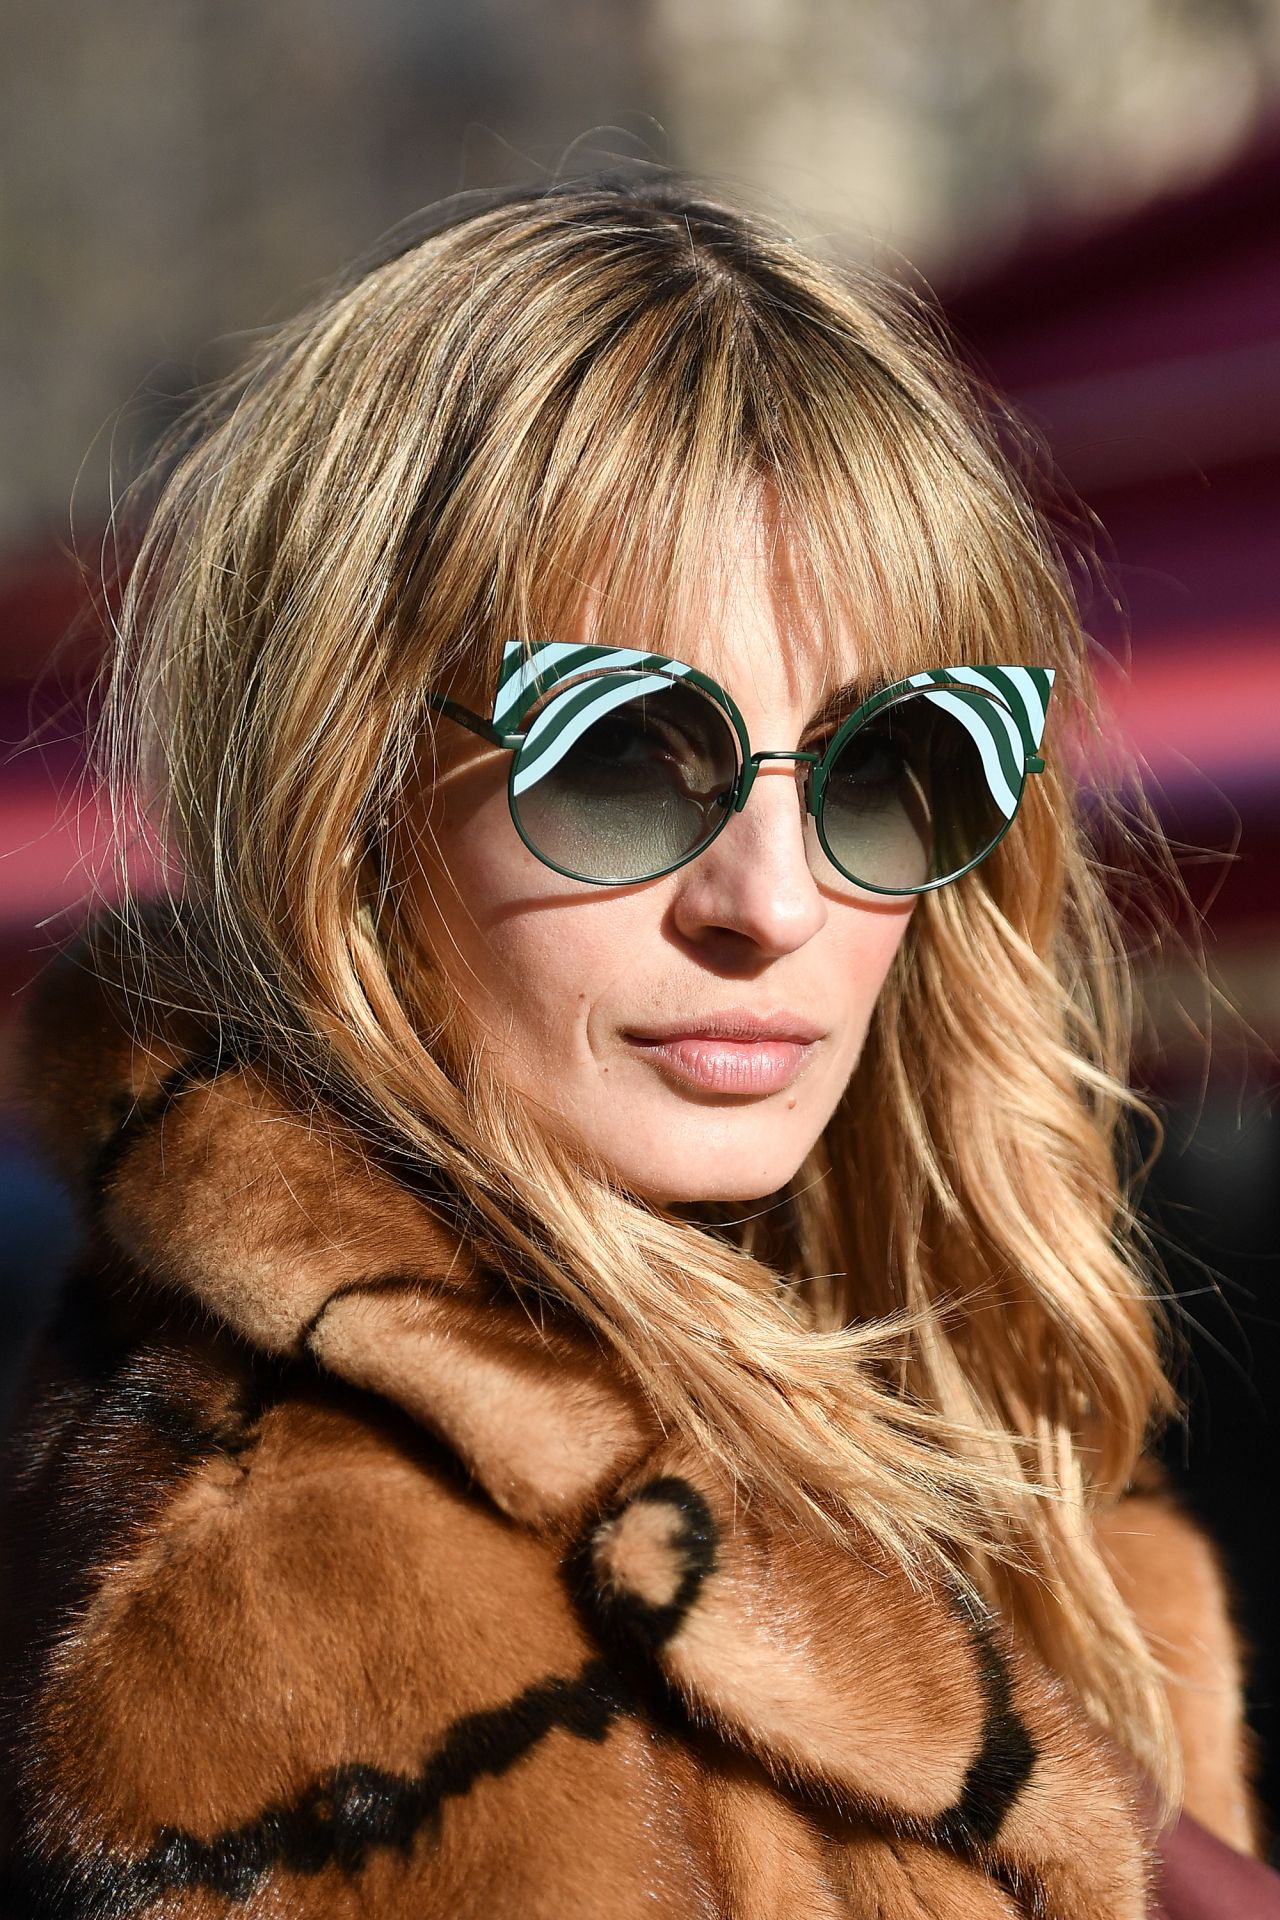 Sveva Alviti wearing Bulgari Bag and Sunglasses is seen at Rodeo